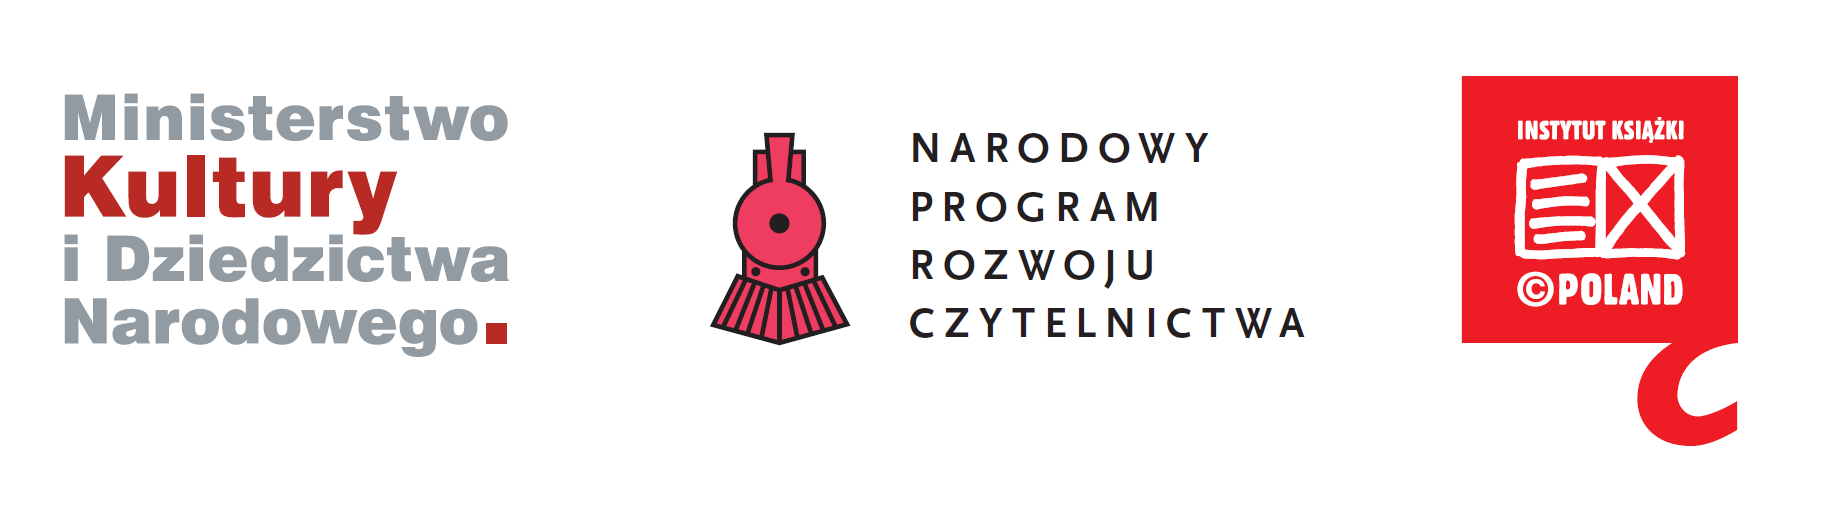 Logotypy projektu. Od lewej Logo Ministerstwa Kultury i Dziedzictwa Narodowego, logo Narodowego Programu Rozwoju Czytelnictwa, logo Instytutu Książki